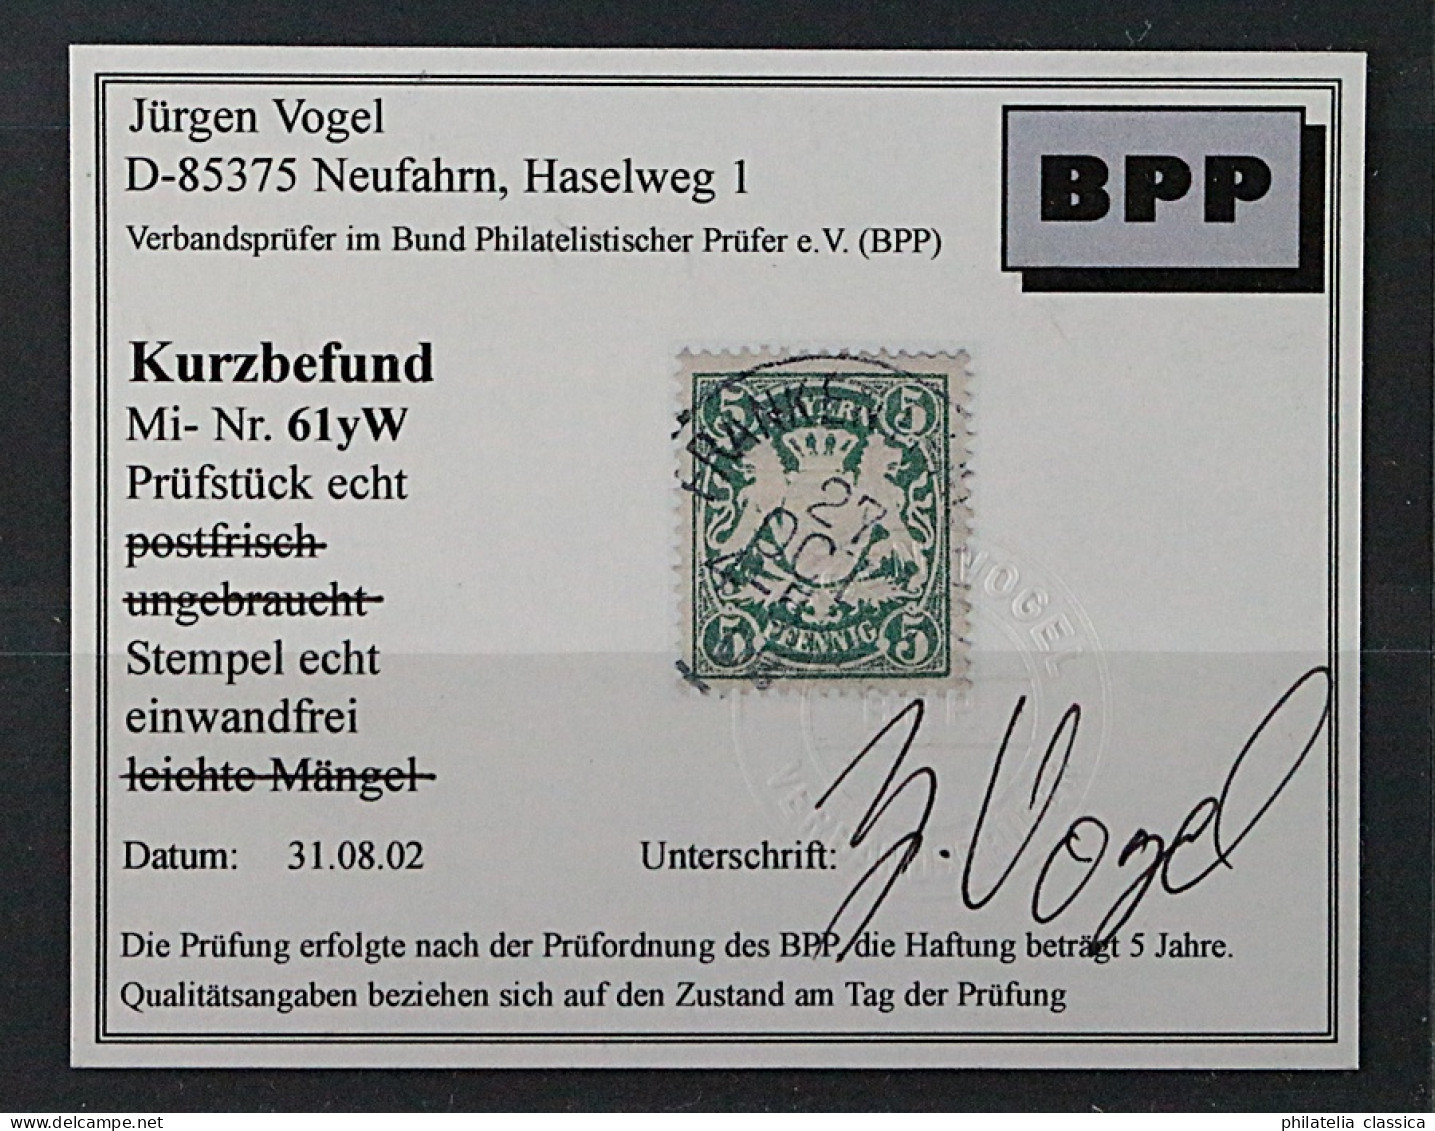 Bayern  61 Y W,  5 Pfg. Wasserzeichen 3 Statt 4, Fotobefund, SELTEN, KW 450,- € - Used